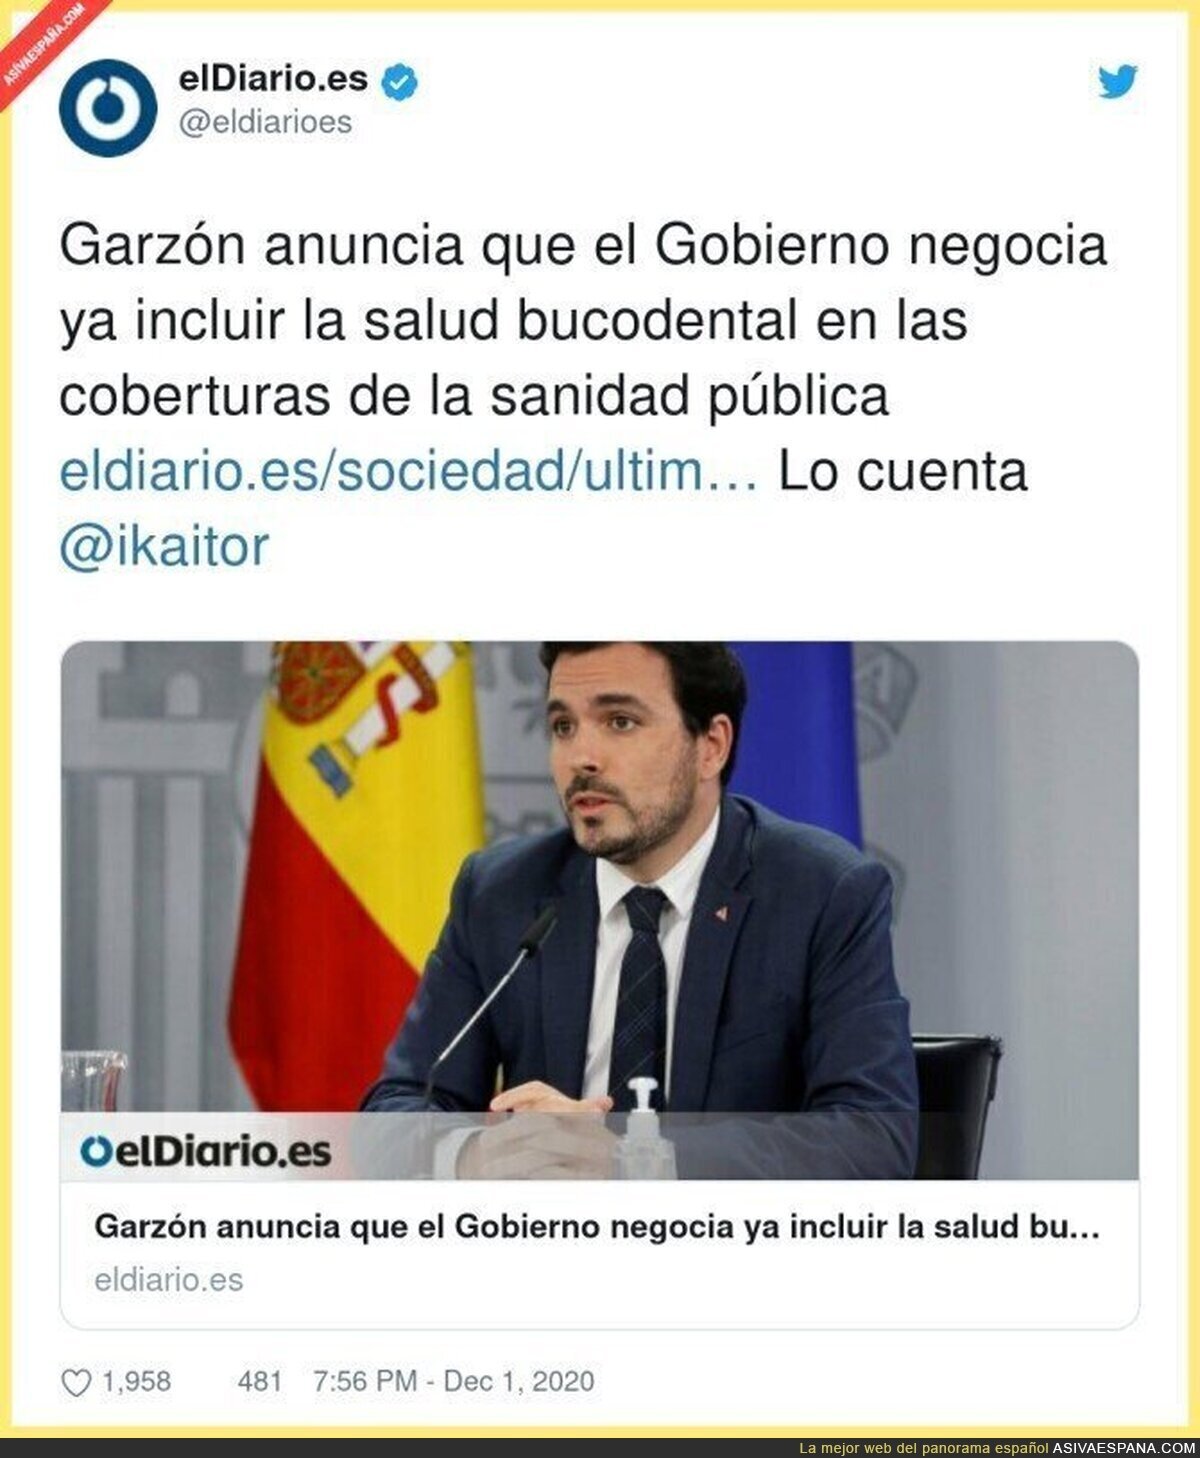 Una grandísima noticia la que anuncia Alberto Garzón sobre la salud bucodental